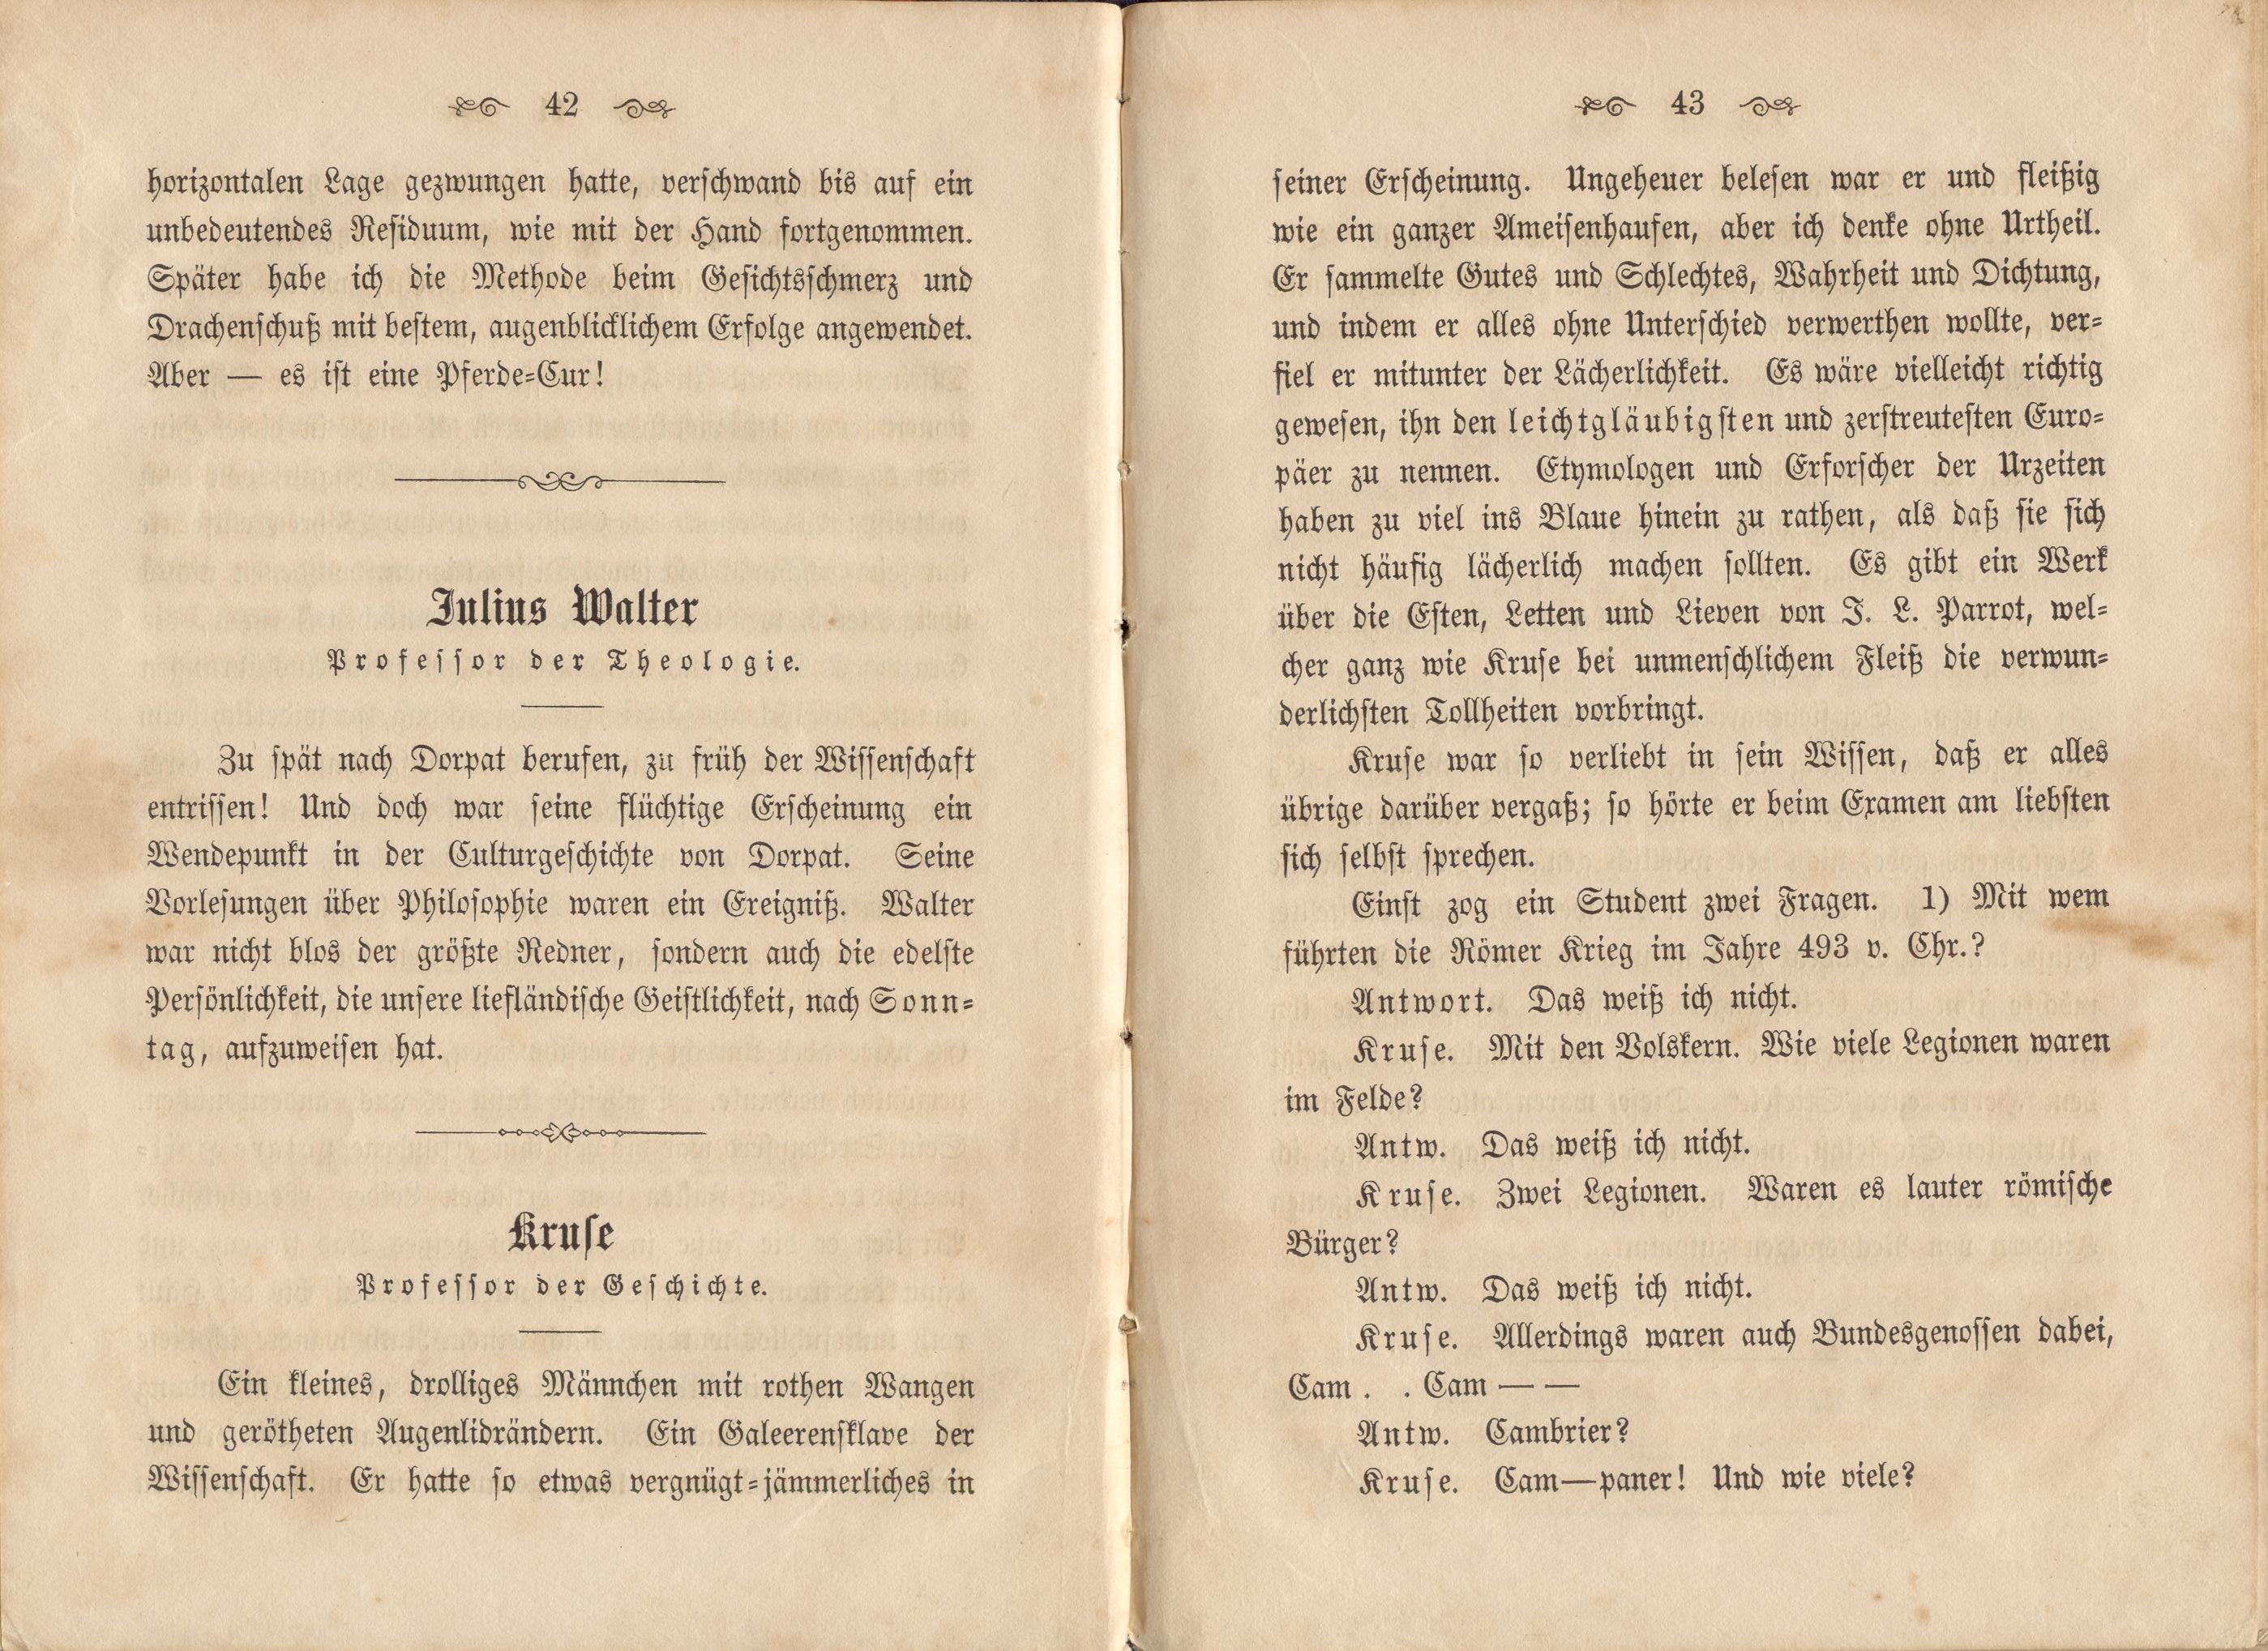 Dorpats Grössen und Typen (1868) | 24. (42-43) Haupttext